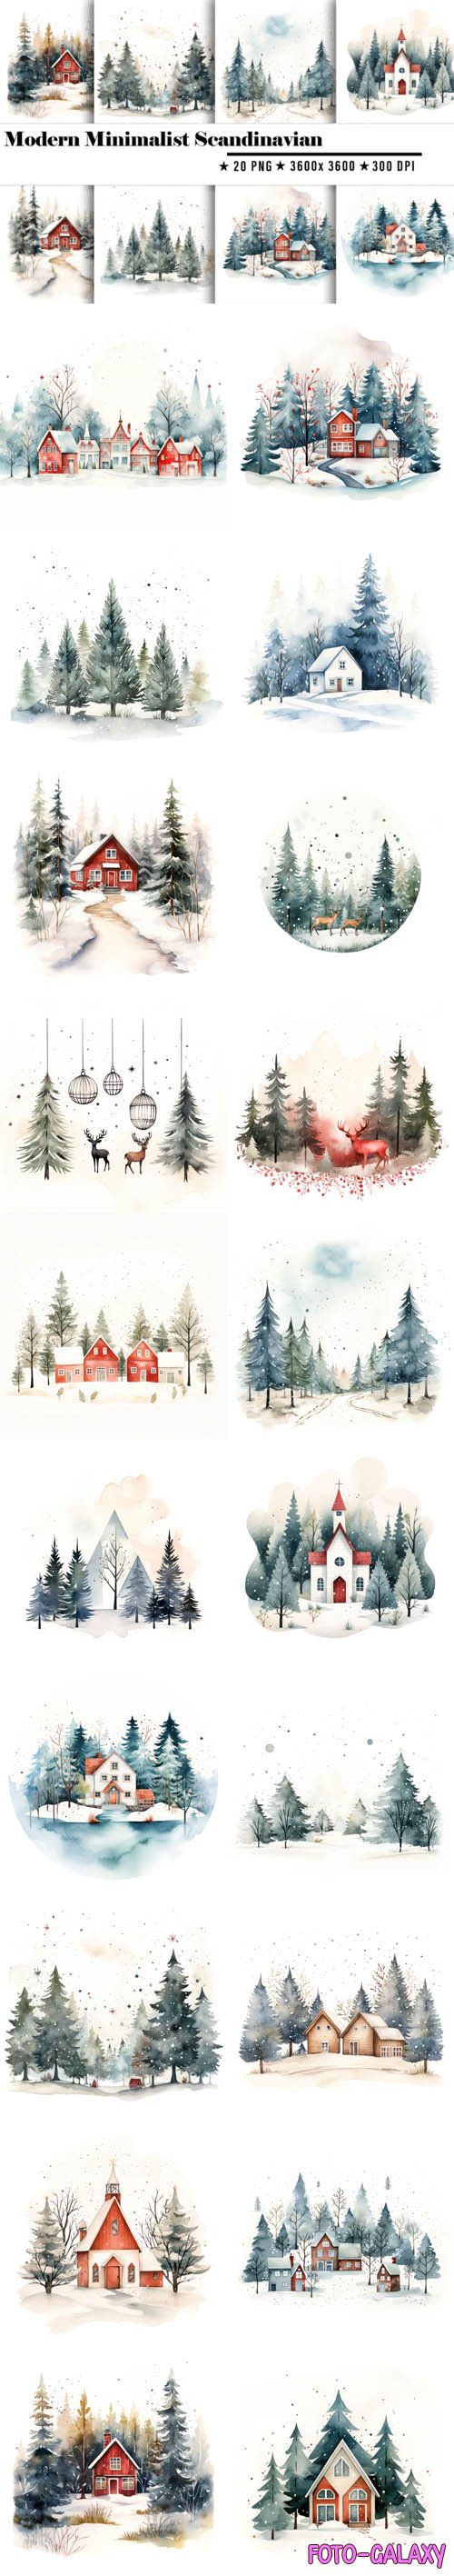 20 Modern Minimalist Scandinavian in Winter Backgrounds